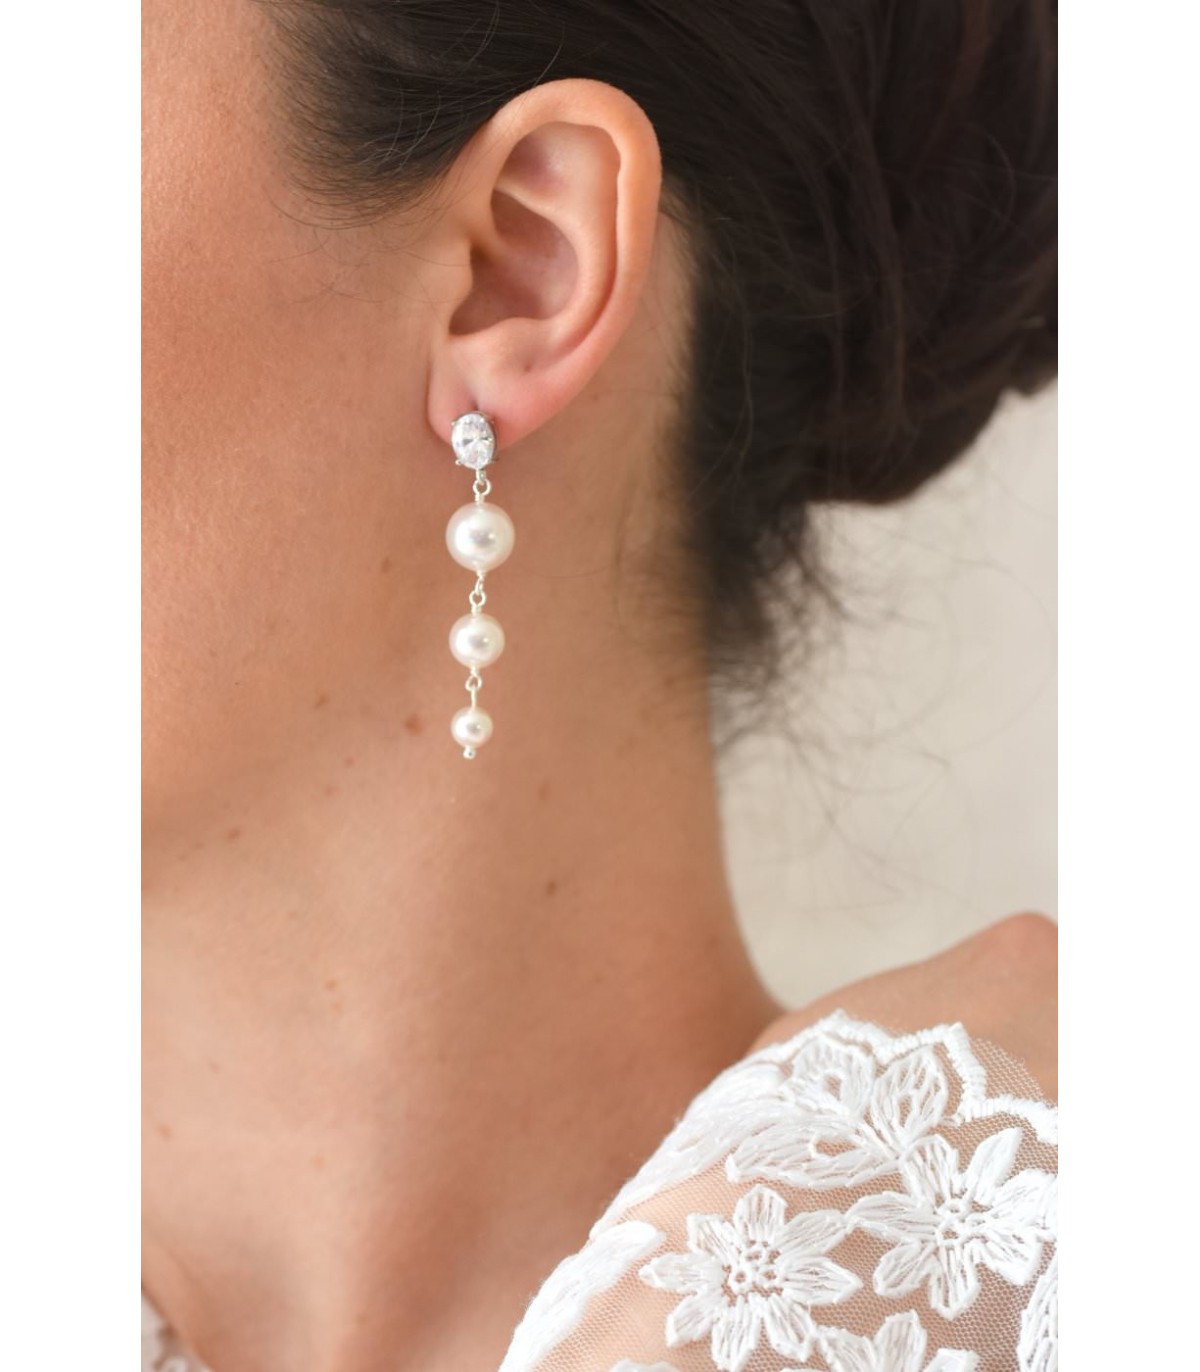 Boucles d'oreilles Chandelier pour la mariée, pendantes et glamour avec des perles nacrées et un fermoir strassé.